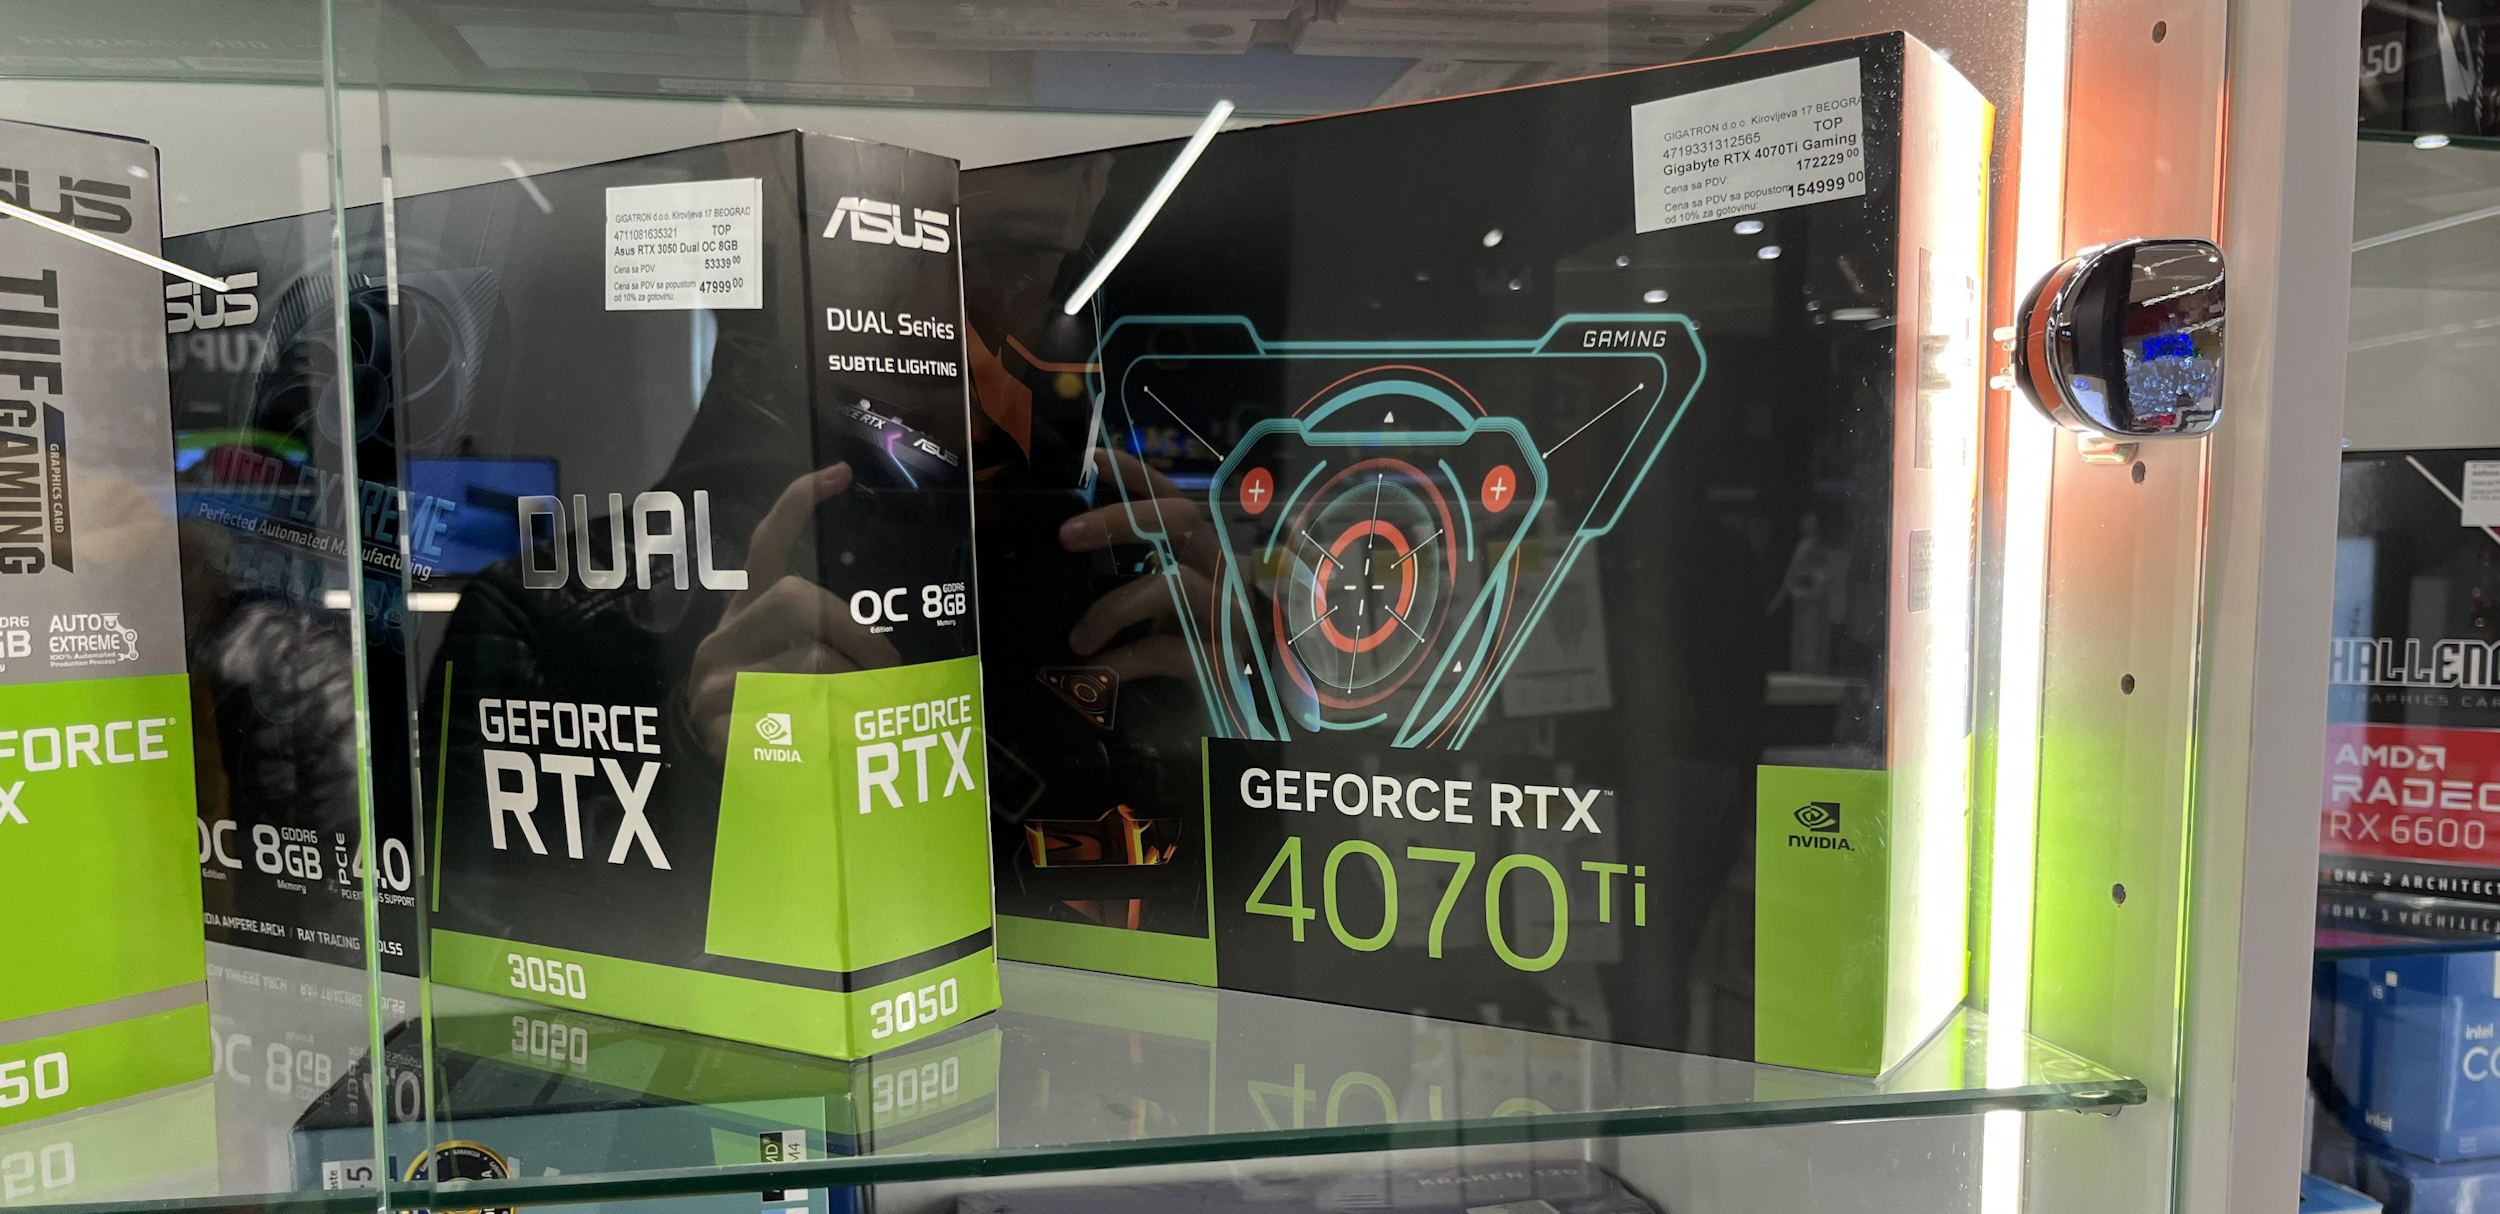 nvidia geforce rtx 4070 ti 1 1 หลุดการ์ดจอ NVIDIA GeForce RTX 4070 Ti วางจำหน่ายแล้วในเซอร์เบีย ราคา 1,400 ดอลลาร์สหรัฐฯ หรือประมาณ 50,XXXบาท 